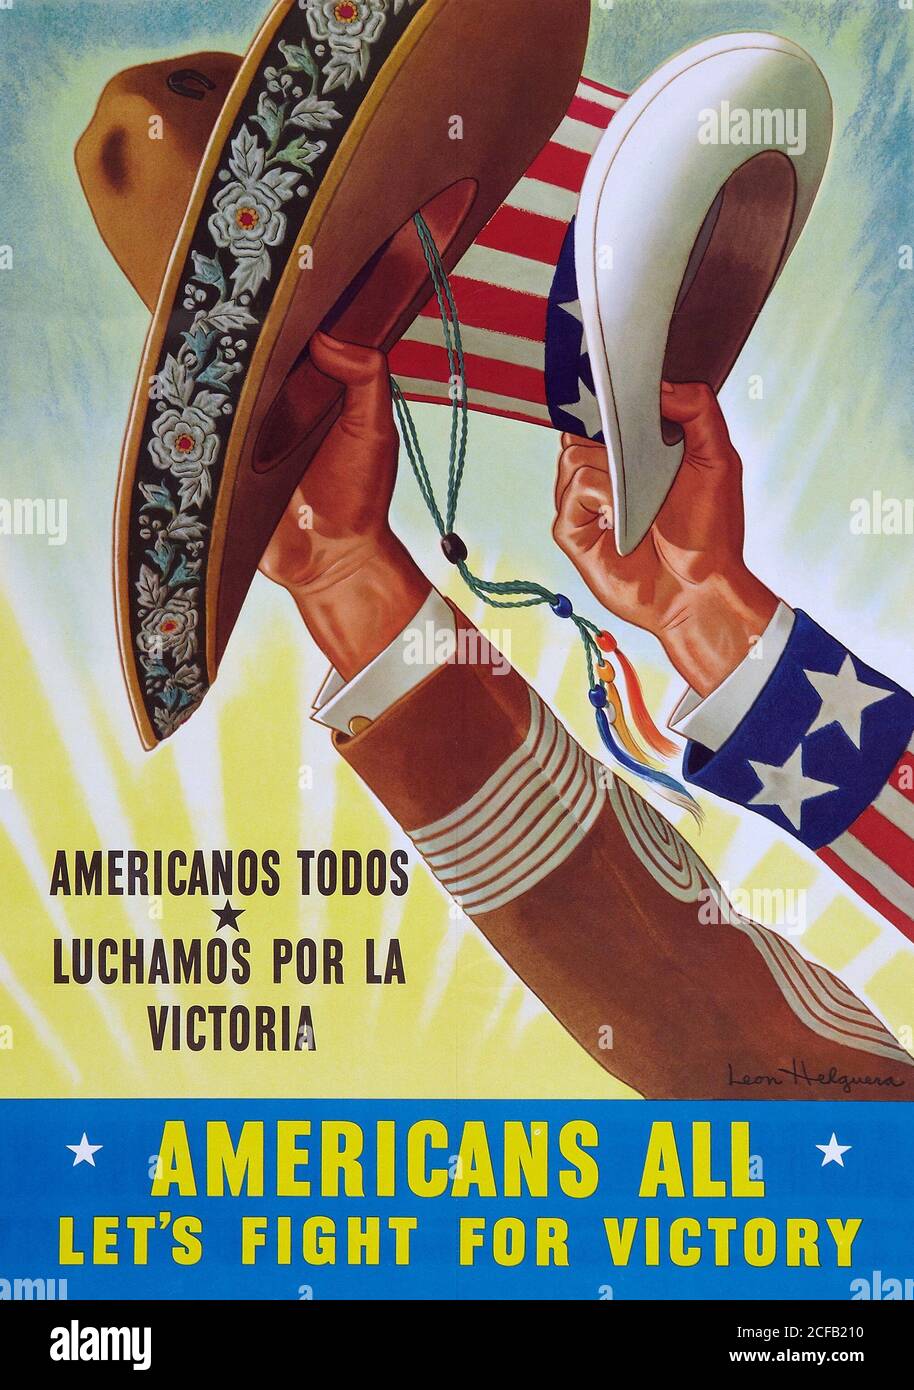 Americans all, let's fight for victory: Americanos todos, luchamos por la victoria Stock Photo